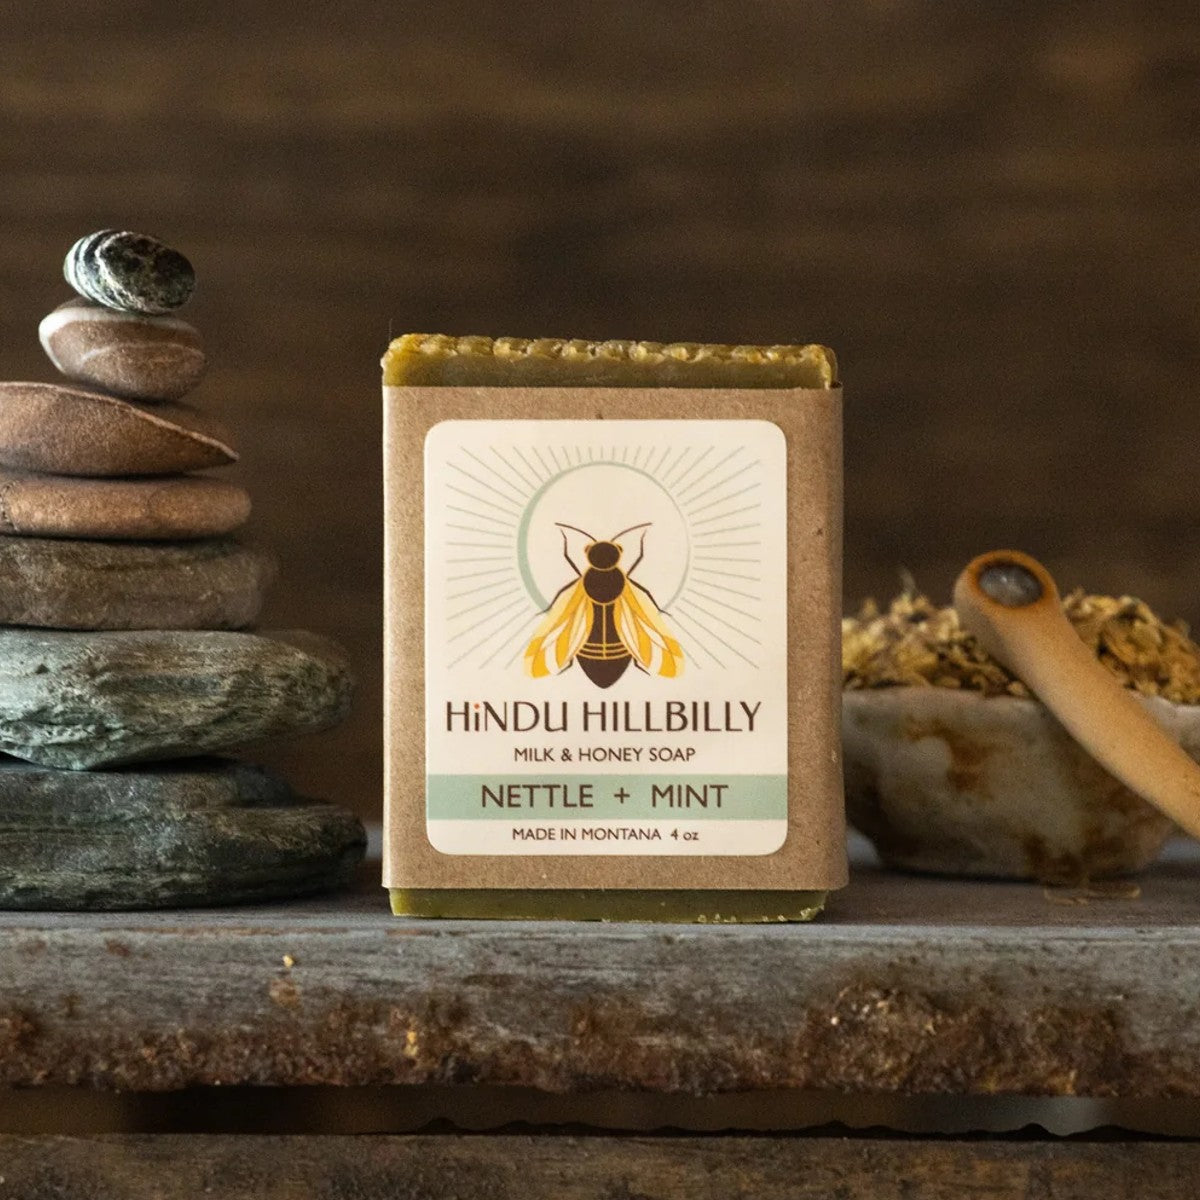 Hindu Hillbilly Nettle + Mint Soap